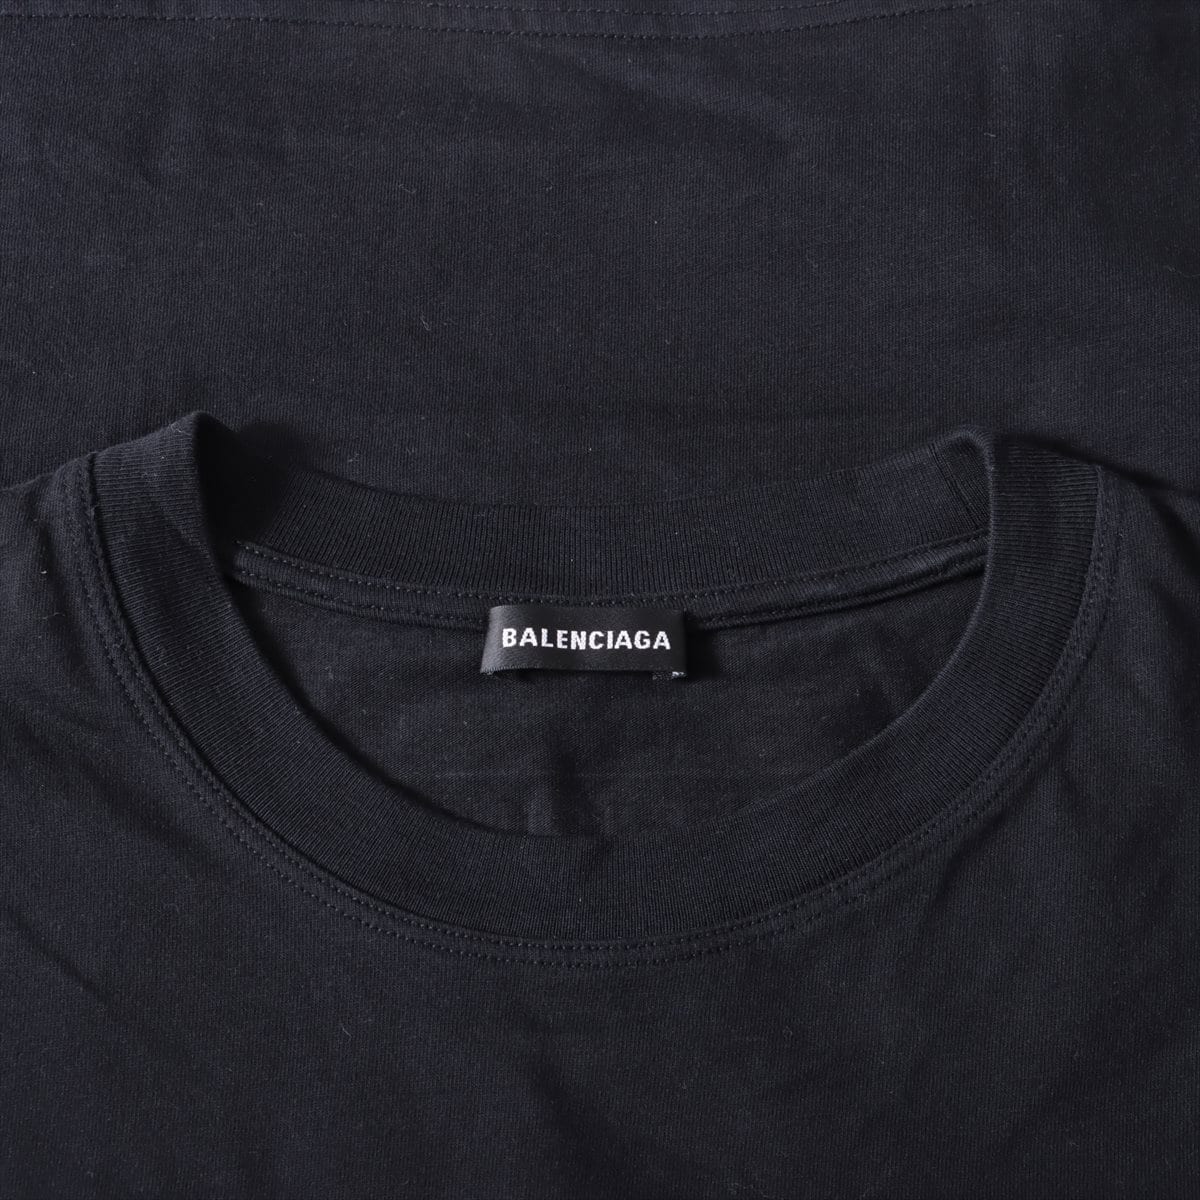 バレンシアガ 2018 コットン Tシャツ M メンズ ブラック  バックロゴ